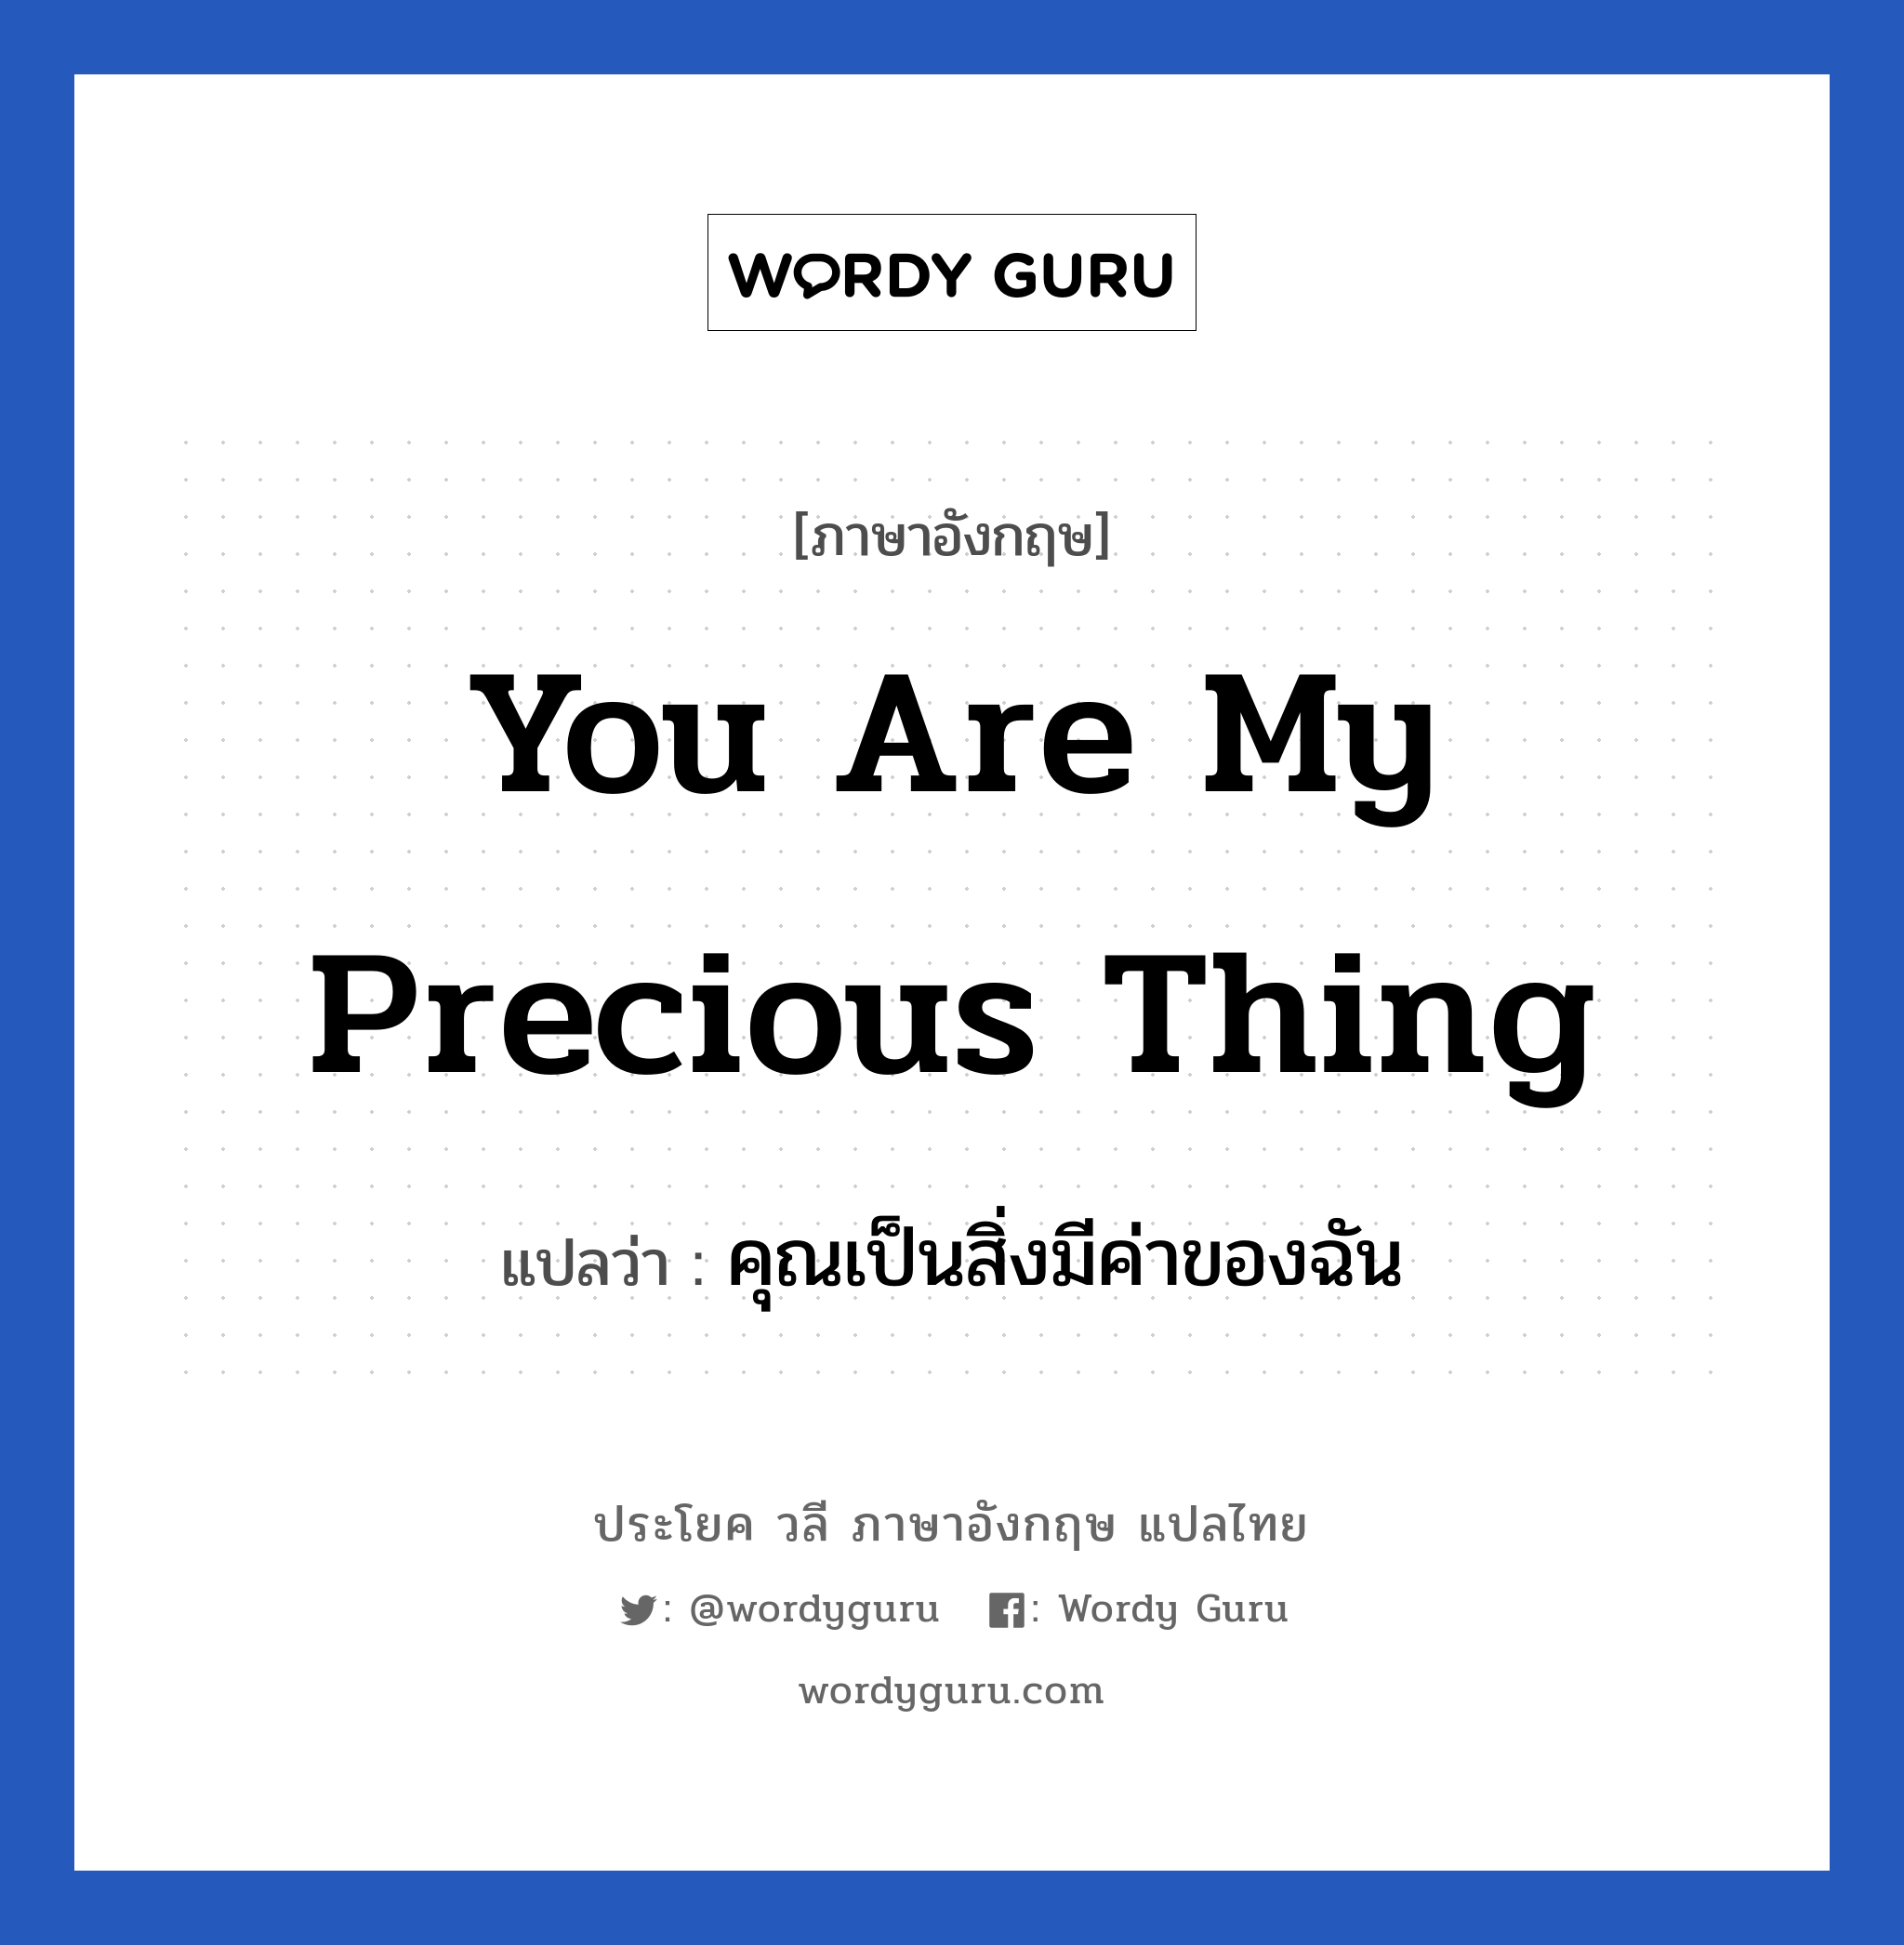 You are my precious thing แปลว่า? เป็นประโยคในกลุ่มประเภท ความรัก, วลีภาษาอังกฤษ You are my precious thing แปลว่า คุณเป็นสิ่งมีค่าของฉัน หมวด ความรัก